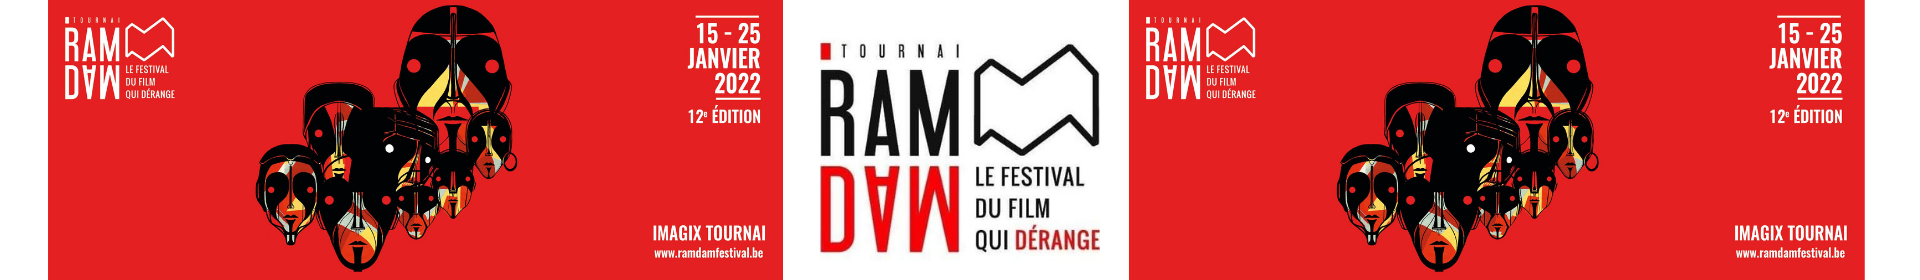 Rappel : film sur l’autisme à Tournai, suivi d’un débat, dans le cadre du Ramdam Festival